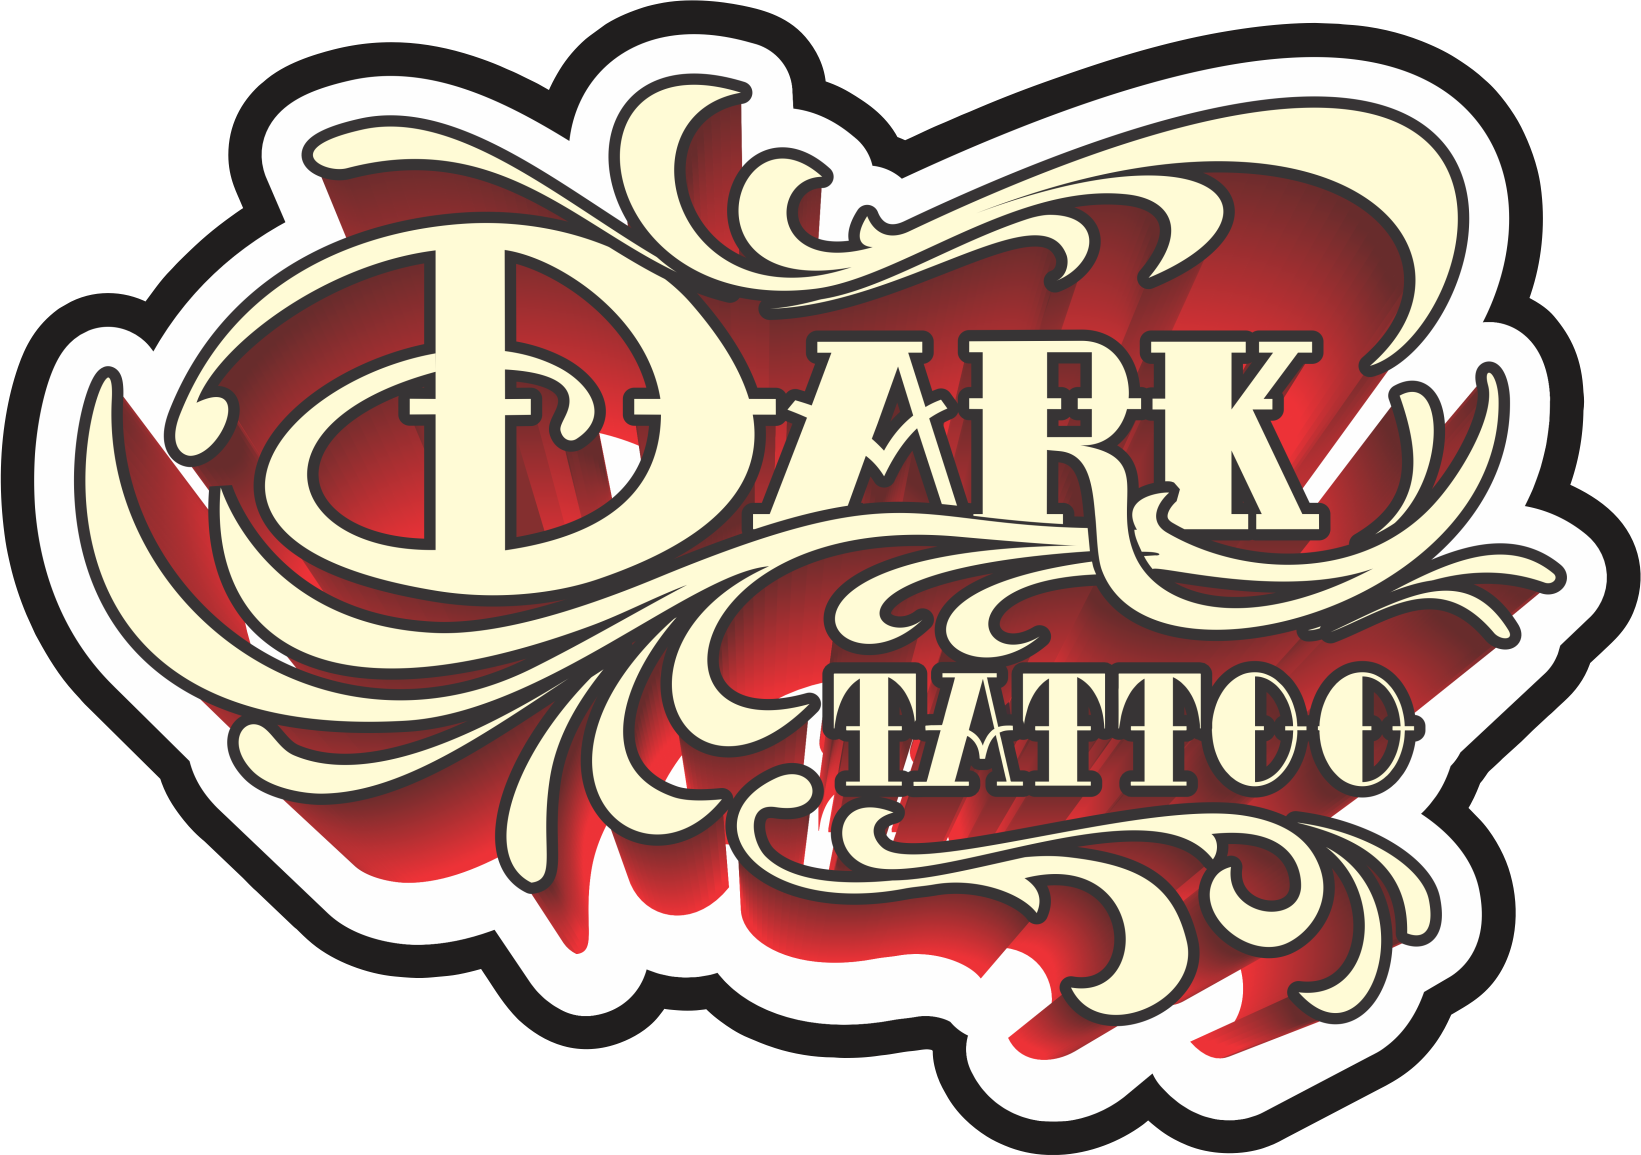 Cali Especialistas En New School - Tiendas De Tatuajes Logo (1641x1155)